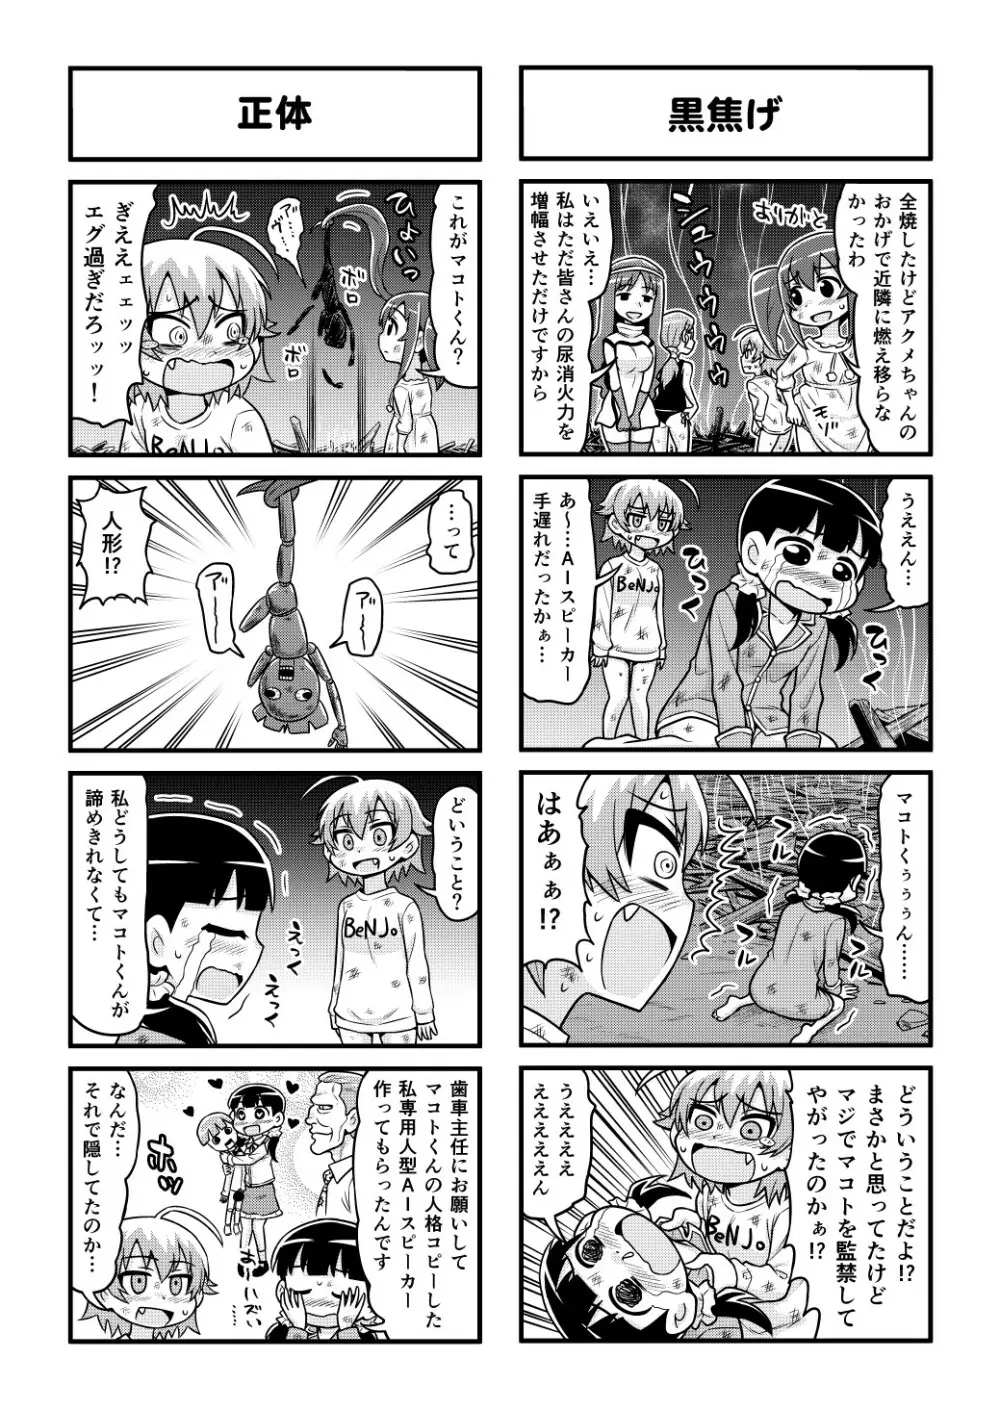 のんきBOY 1-48 - page379